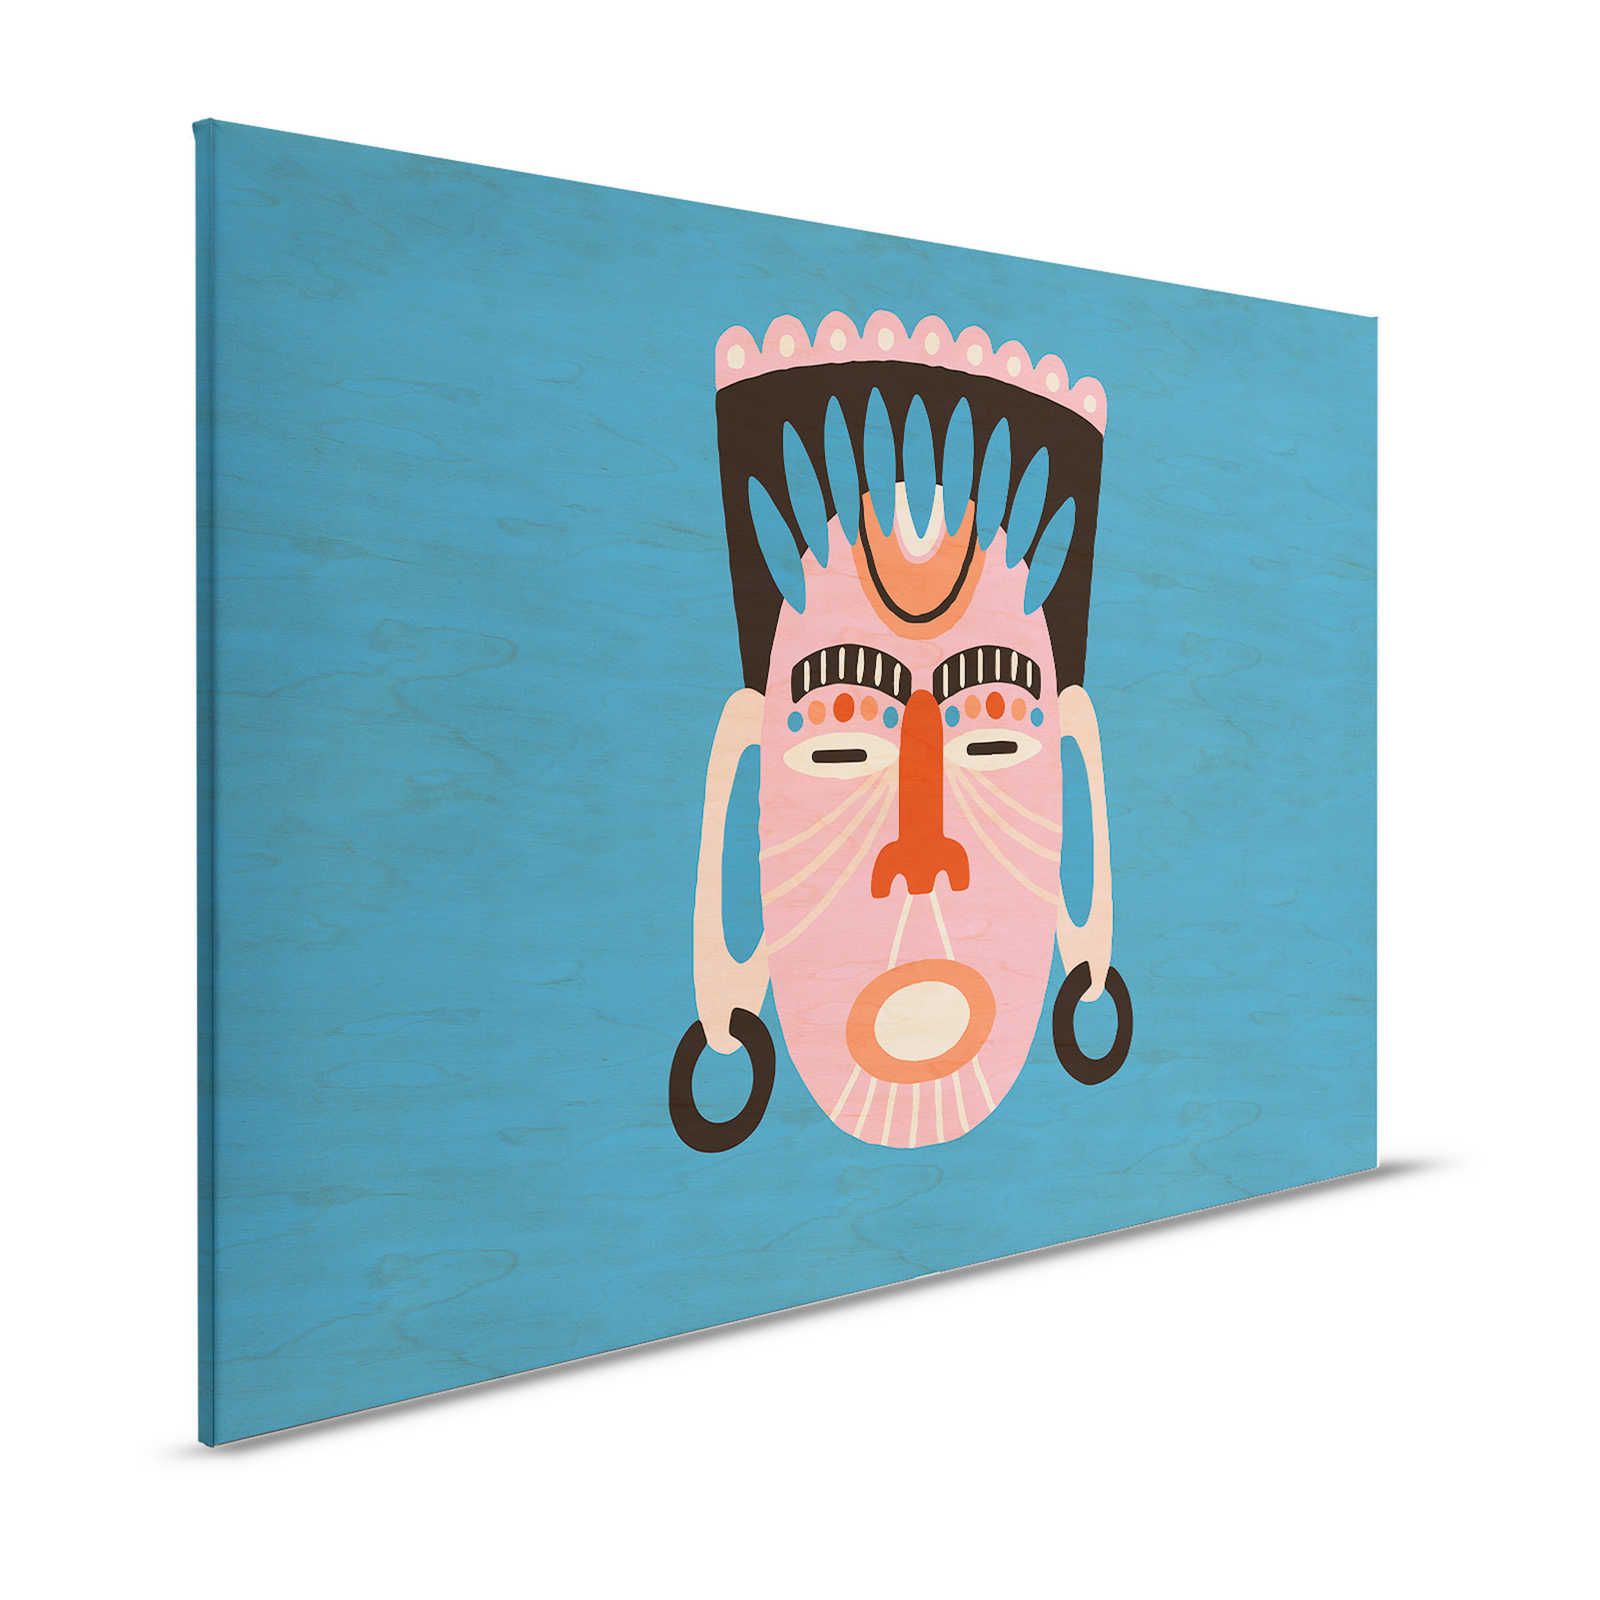 Overseas 3 - Blaues Leinwandbild Ethno Design mit Maske – 1,20 m x 0,80 m
